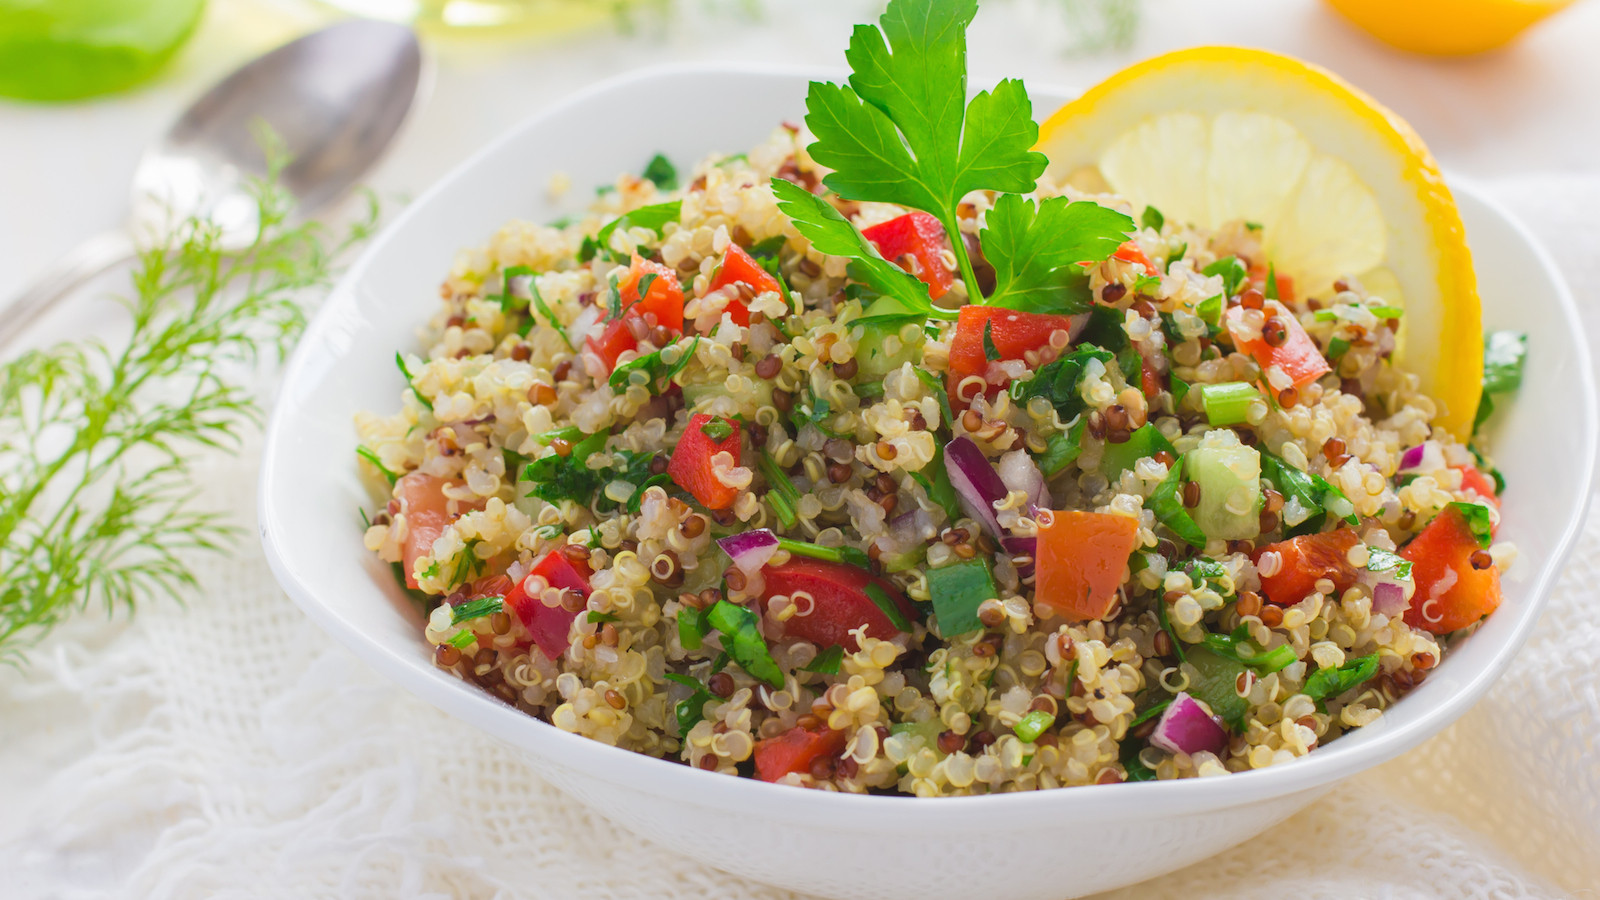 Passover Quinoa Recipes
 Is Quinoa Kosher for Passover